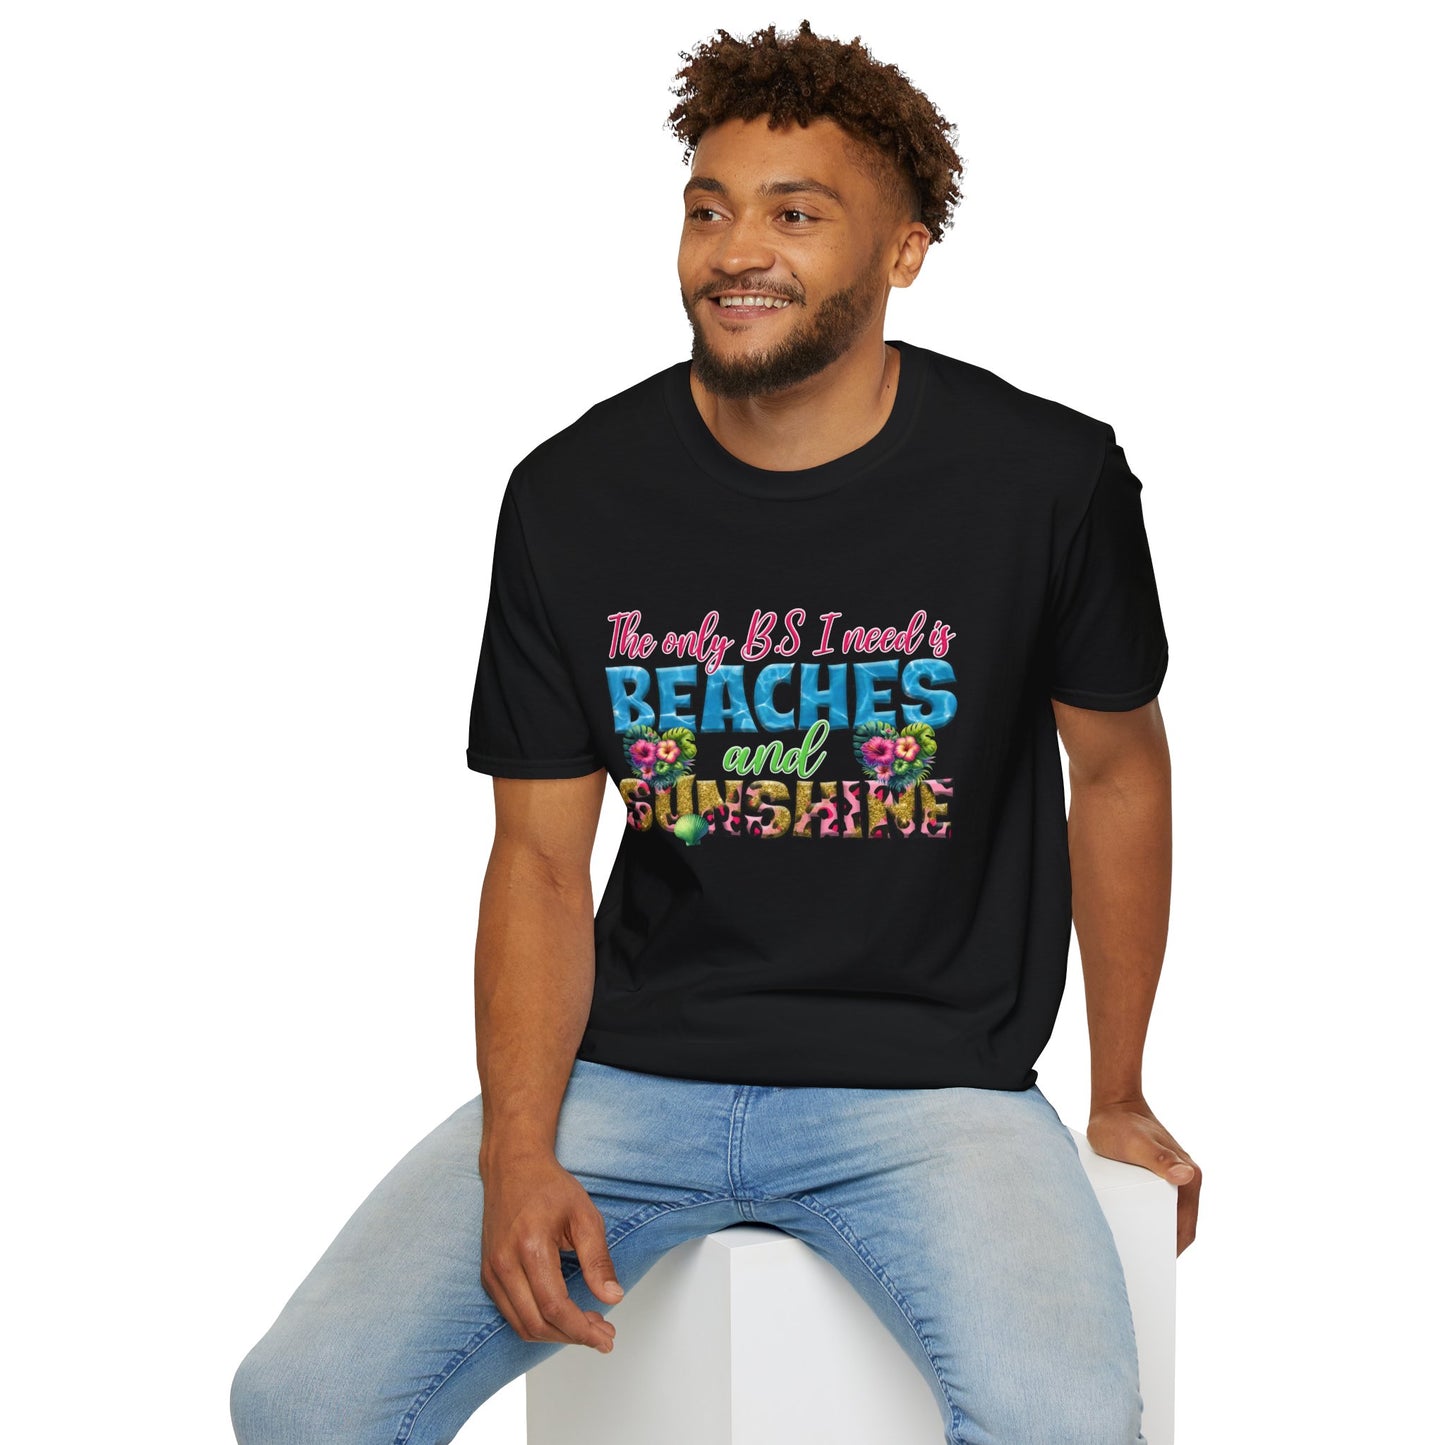 Beaches and Sunshine T-Shirt